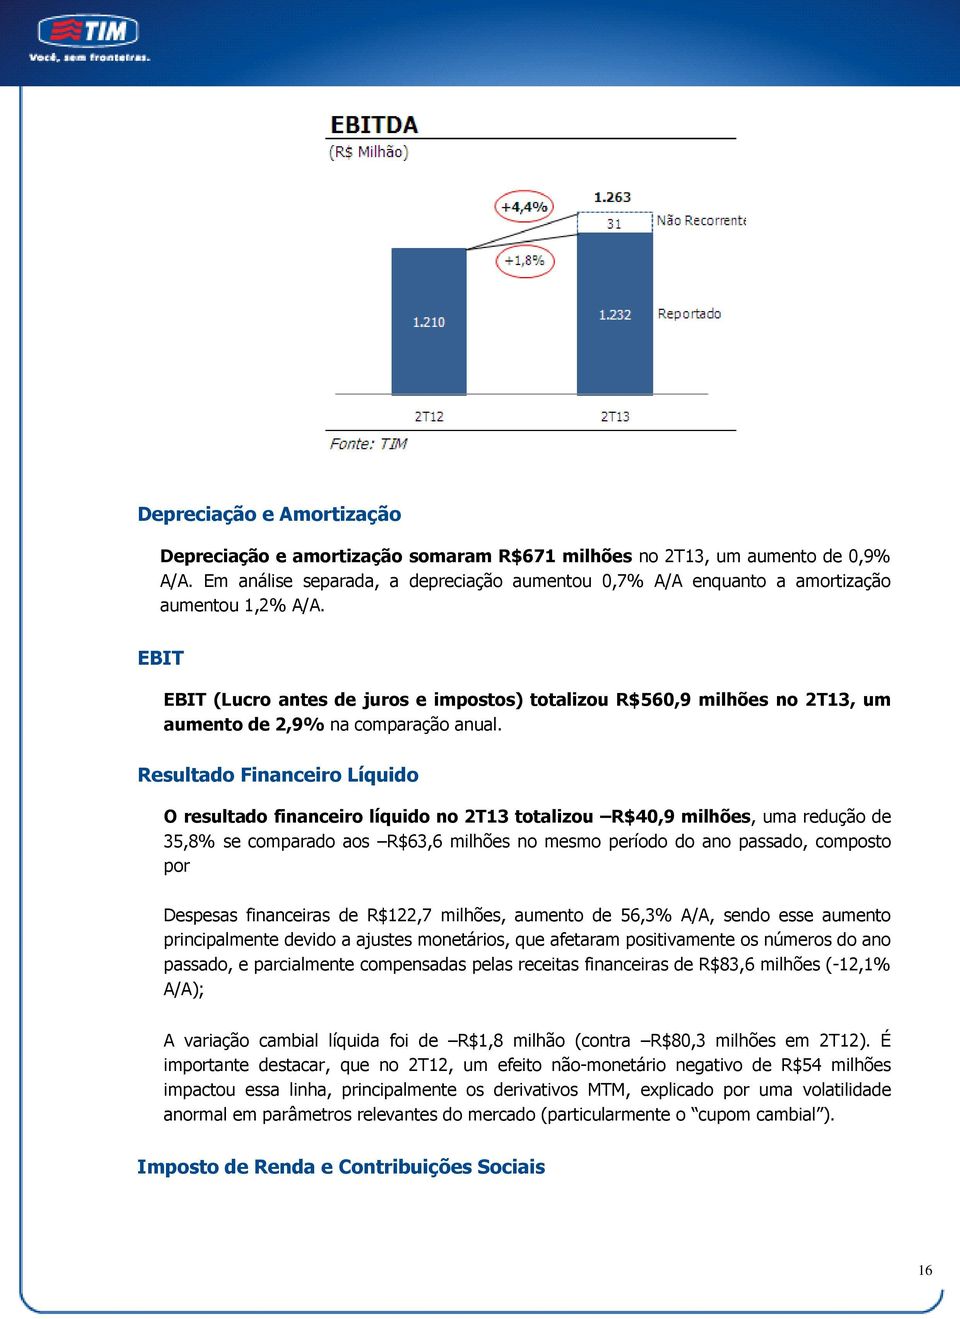 EBIT EBIT (Lucro antes de juros e impostos) totalizou R$560,9 milhões no 2T13, um aumento de 2,9% na comparação anual.